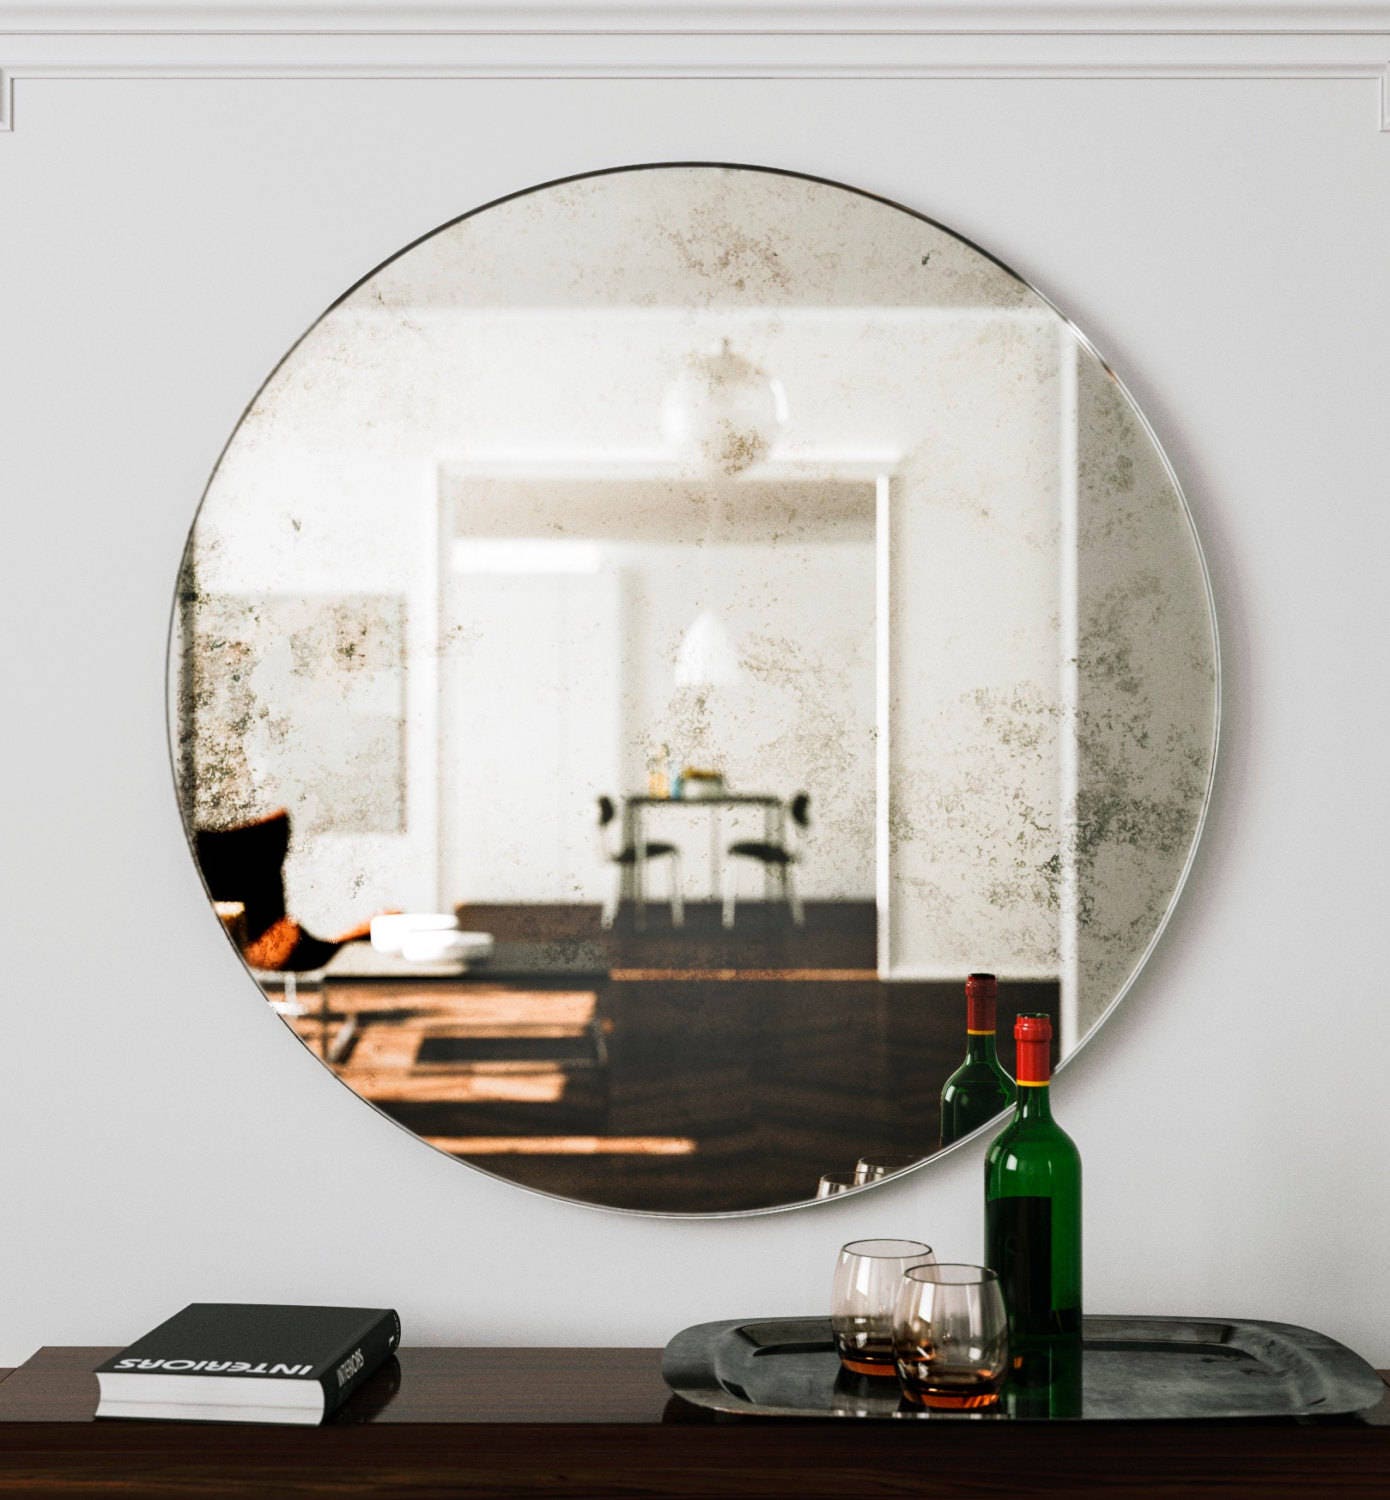 ESPEJO REDONDO CRISTAL MOBIMUNDO, espejo decorativo de diseño italiano  HISPANOHOGAR, venta de espejos decorativos para la pared Online. Exclusivos  diseños de los mejores fabricantes españoles. Compra ahora espejos modernos  para la decoración